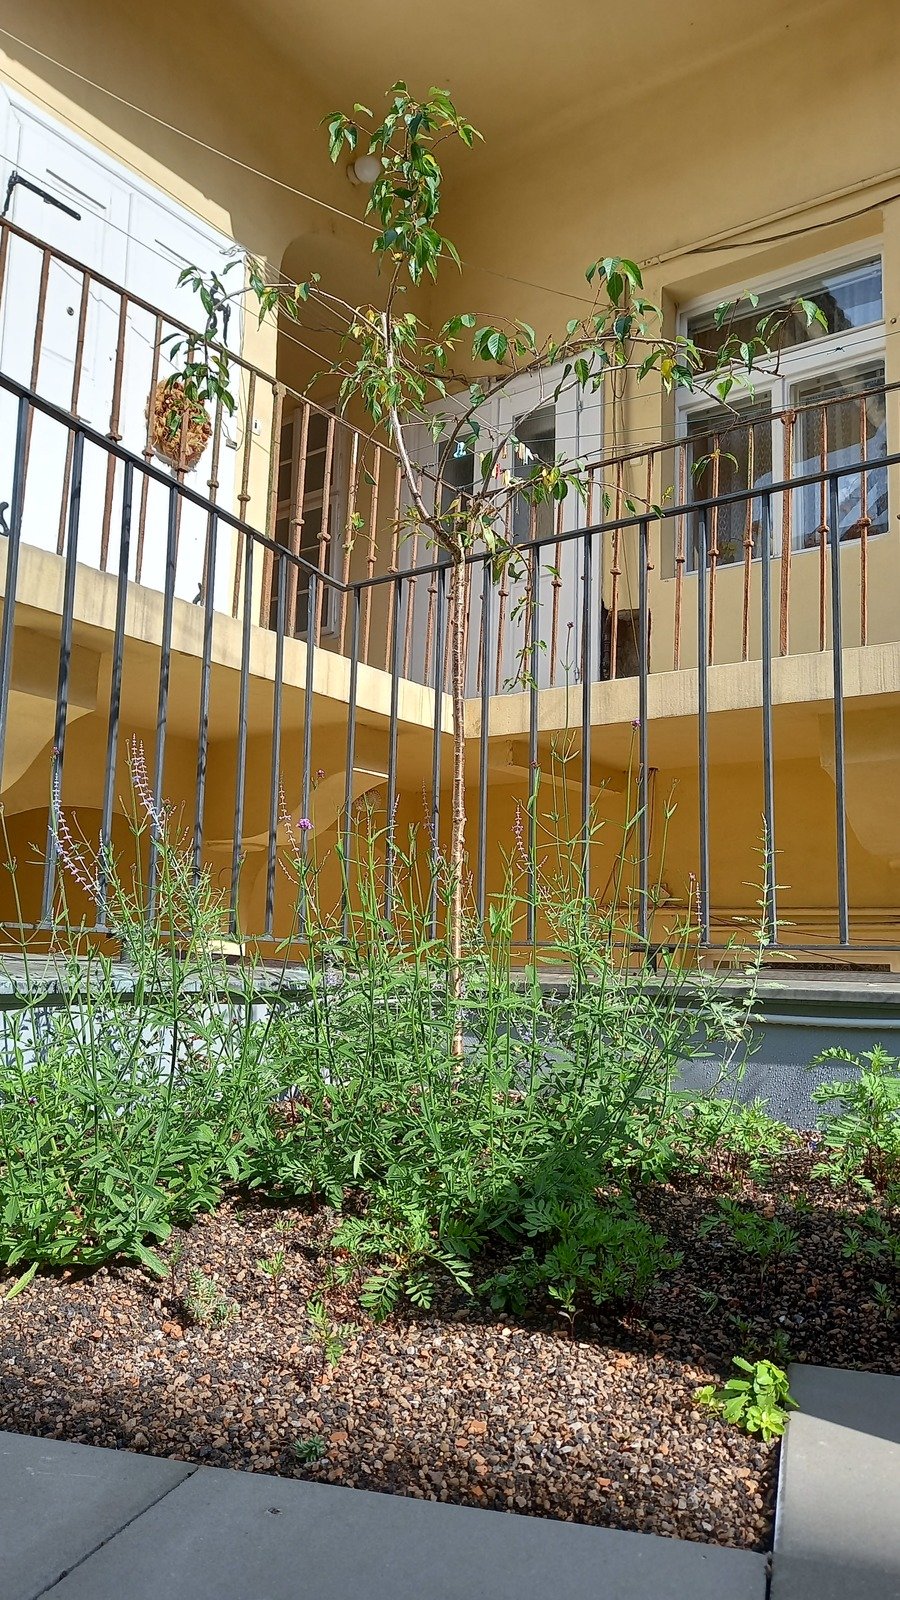 V areálu organizace Život 90 vznikla nová komunitní zahrada v japonském stylu.